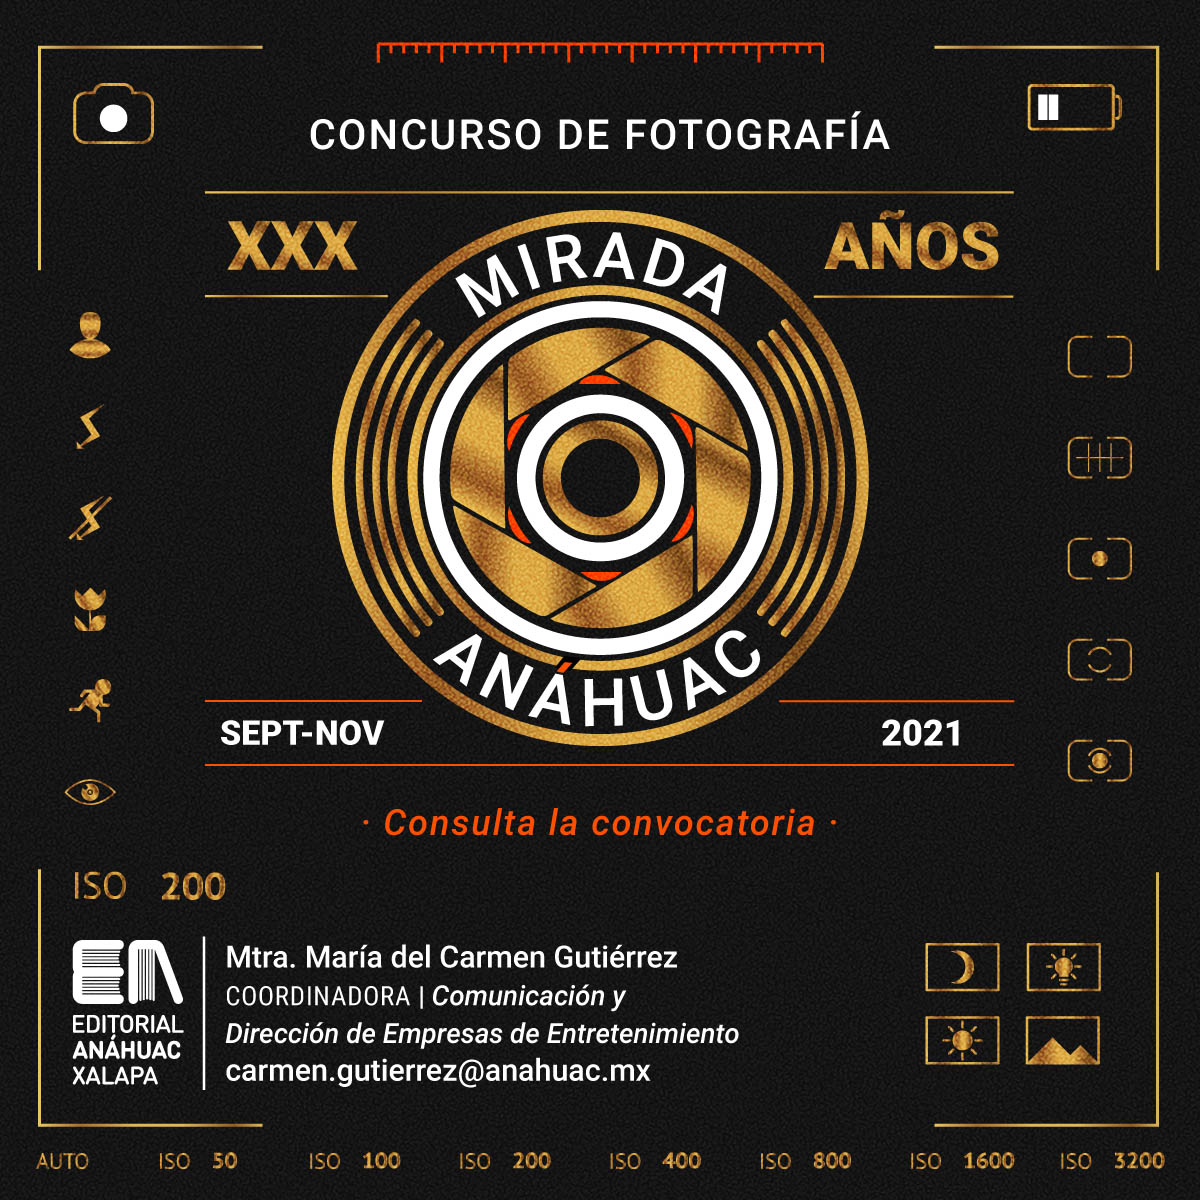 Concurso de Fotografía Mirada Anáhuac